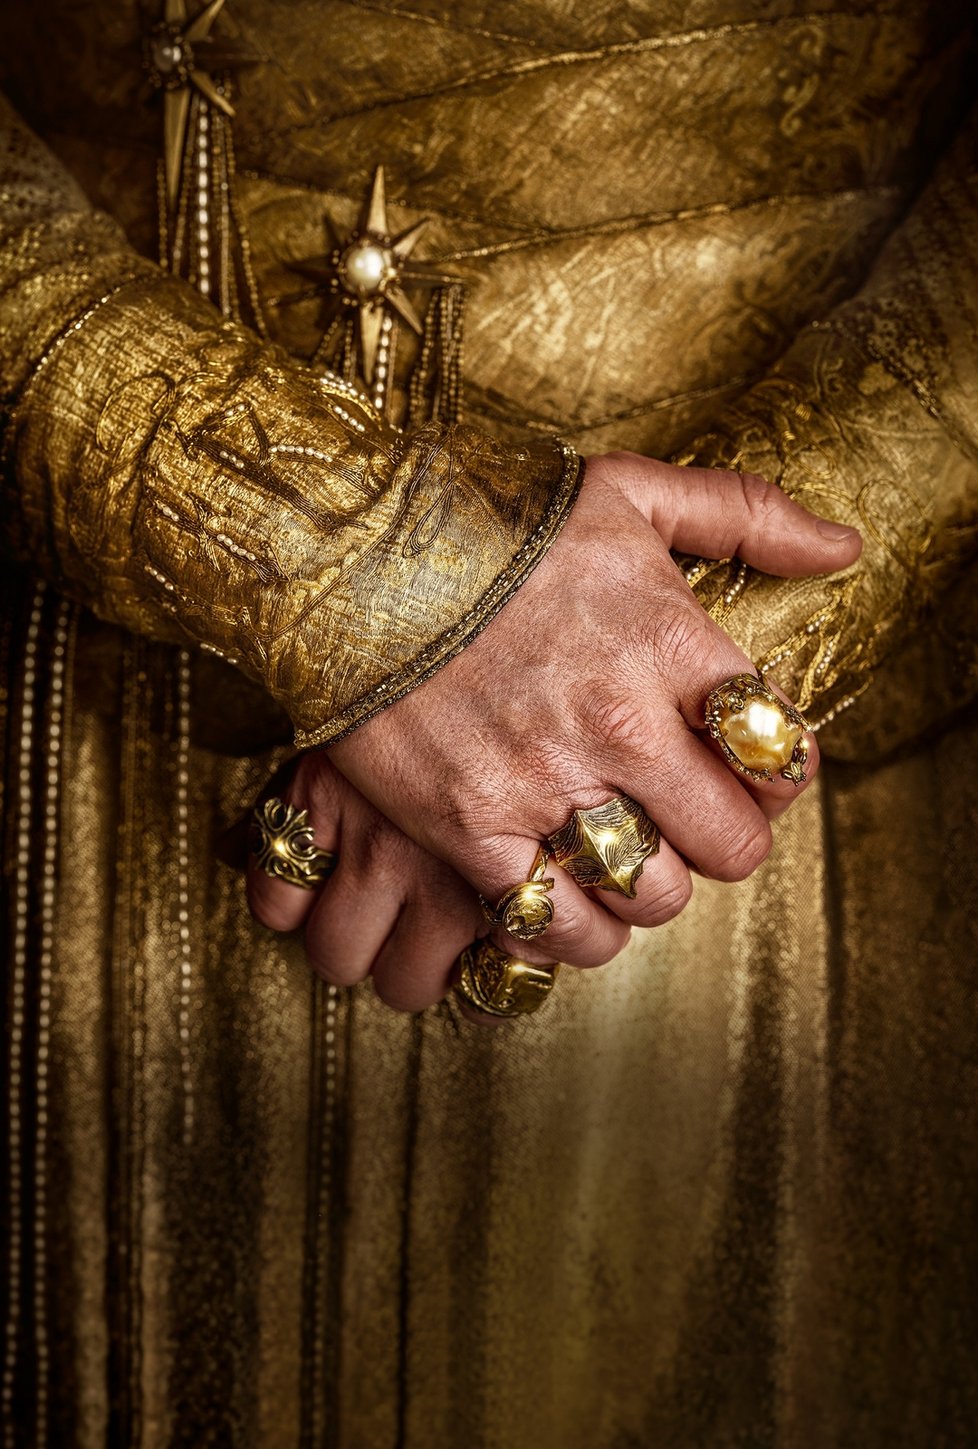 V seriálu Pán prstenů: Prsteny moci známé i nové postavy z příběhů britského klasika J. R. R. Tolkiena musí čelit opětovnému příchodu zla do Středozemě.